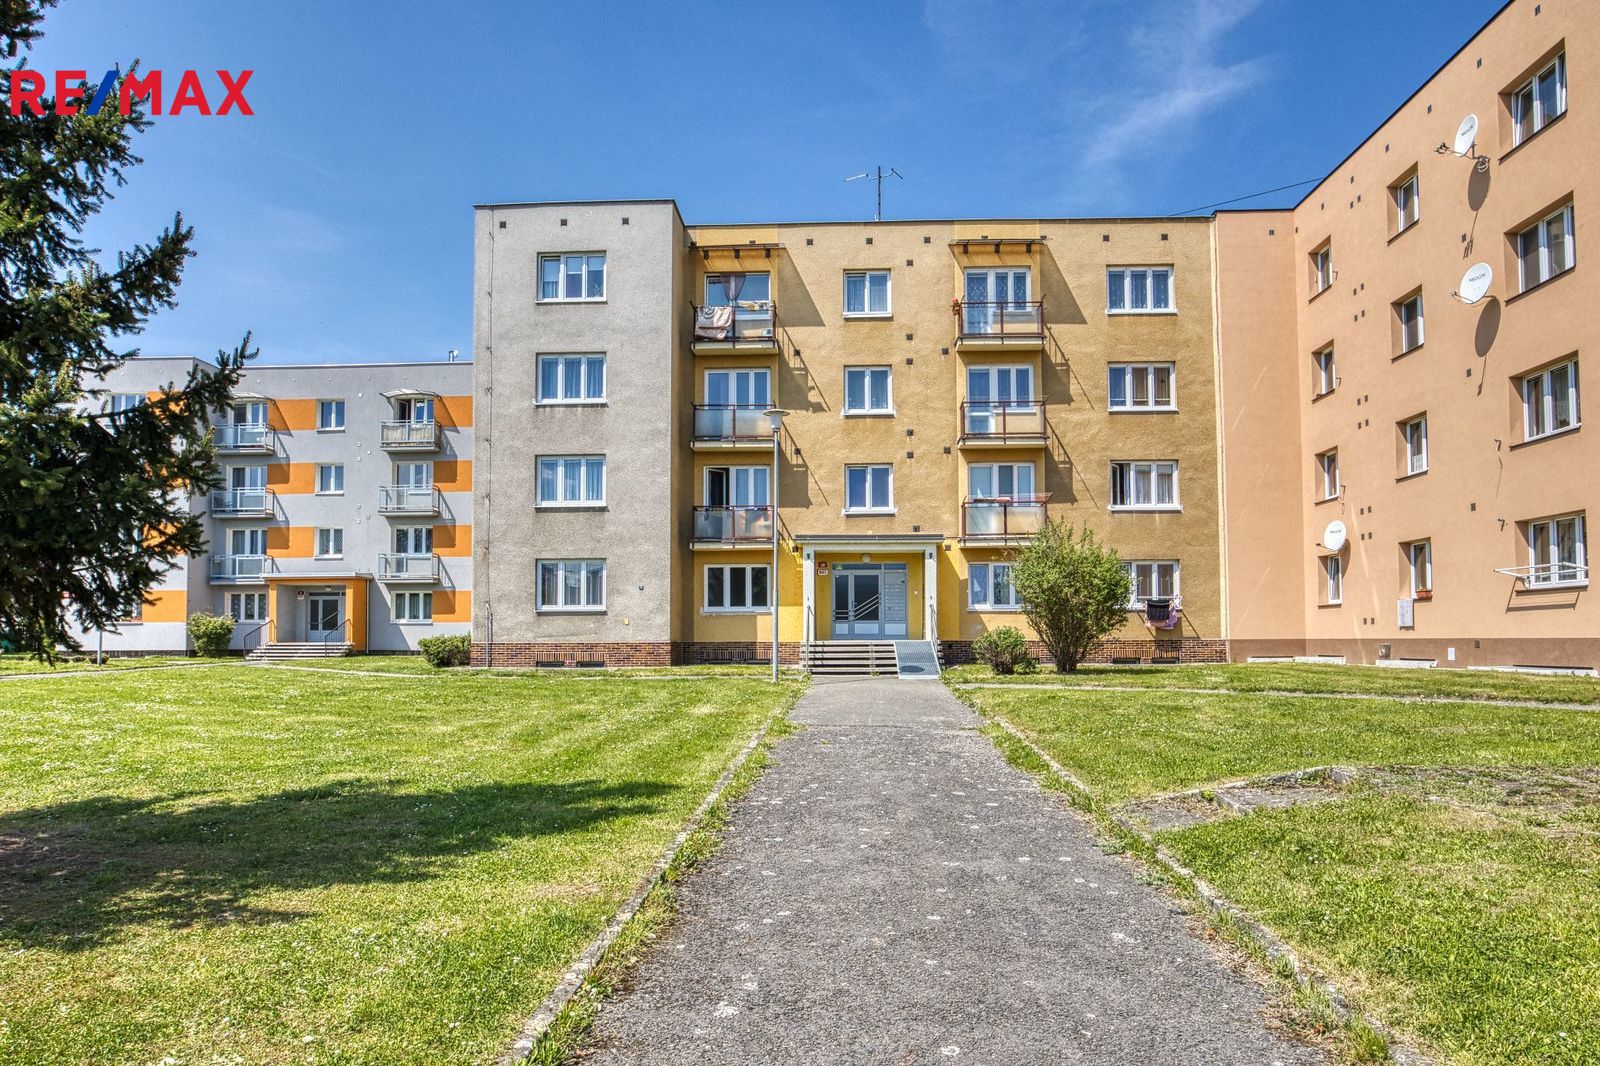 Prodej bytu 3+1 v osobním vlastnictví, 93 m2, Plzeň